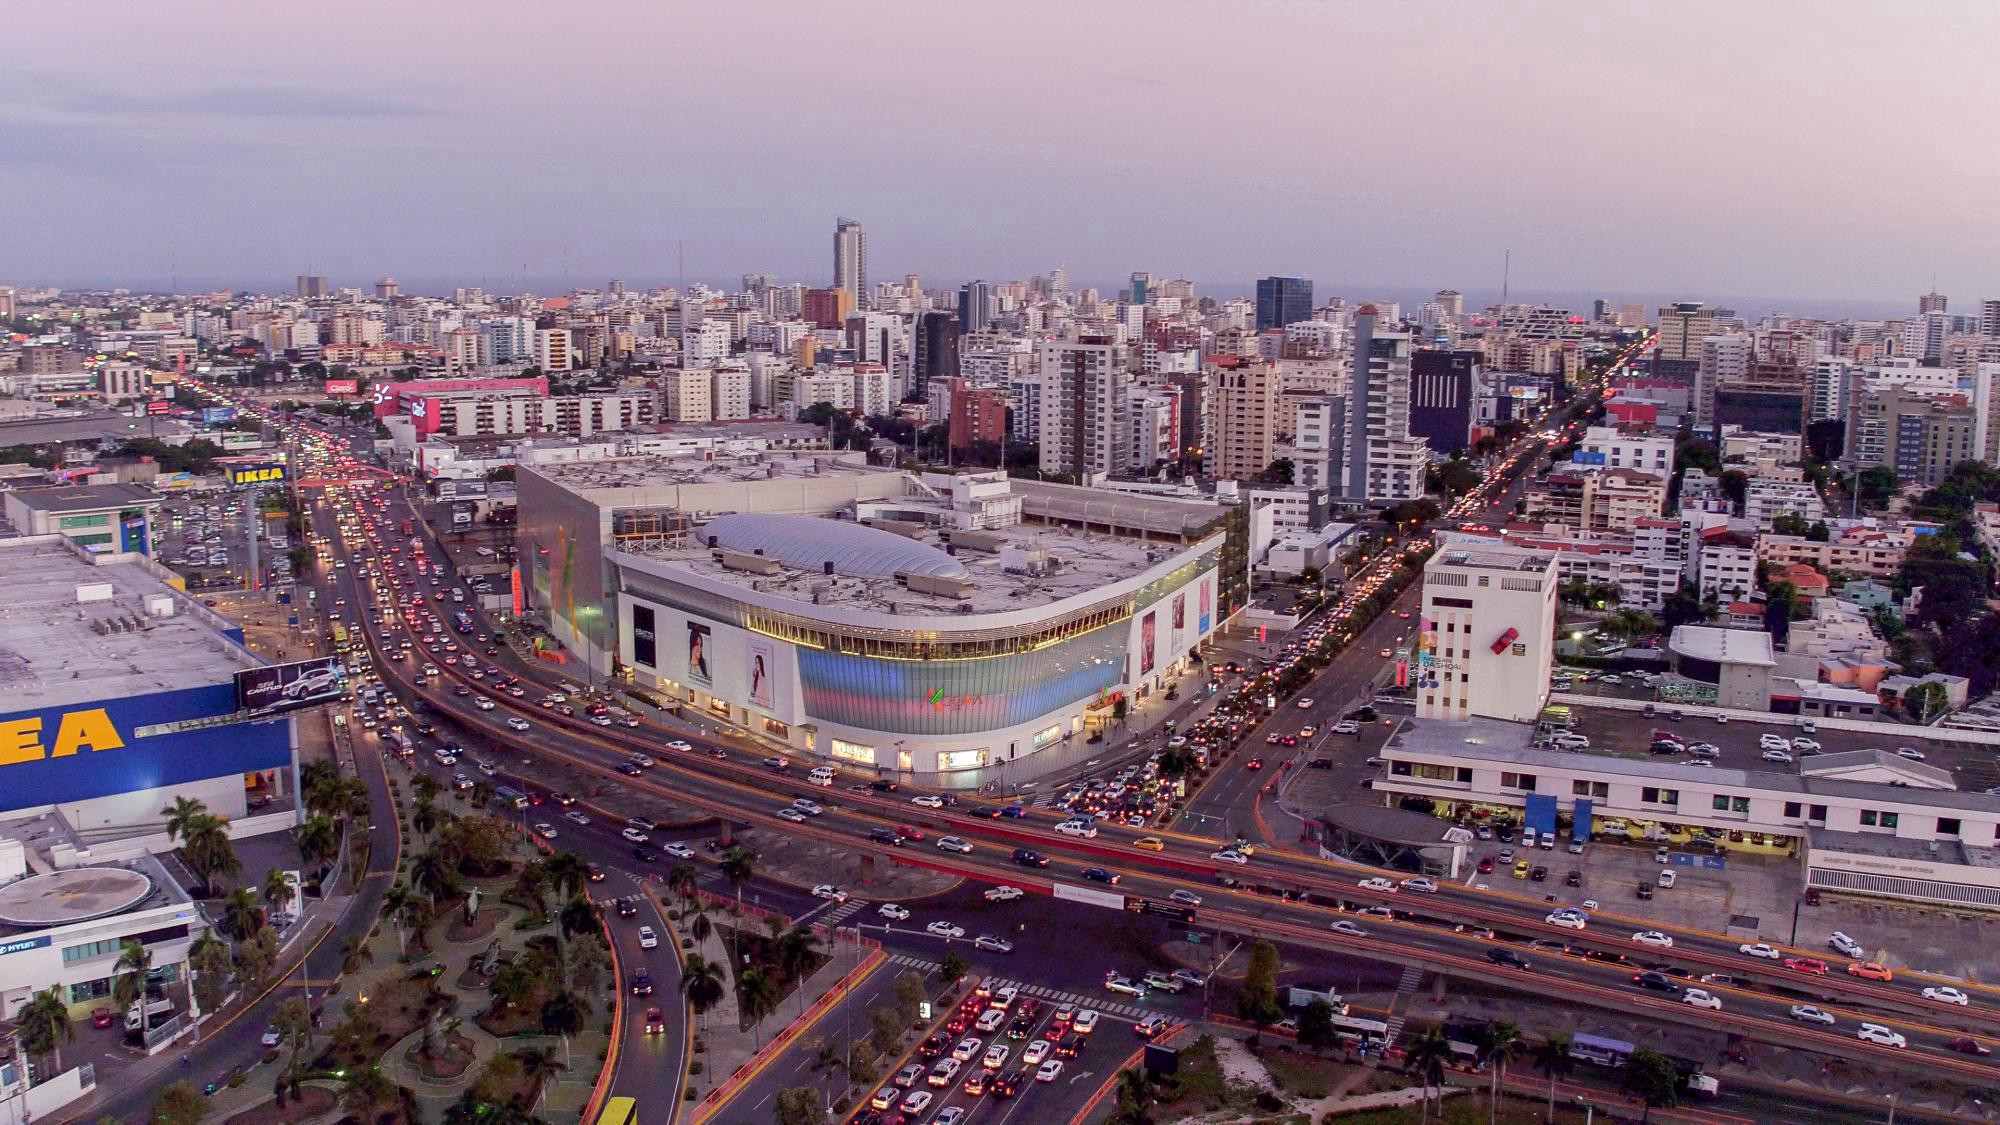 Hoteleros de Santo Domingo valoran construcción de centro de convenciones